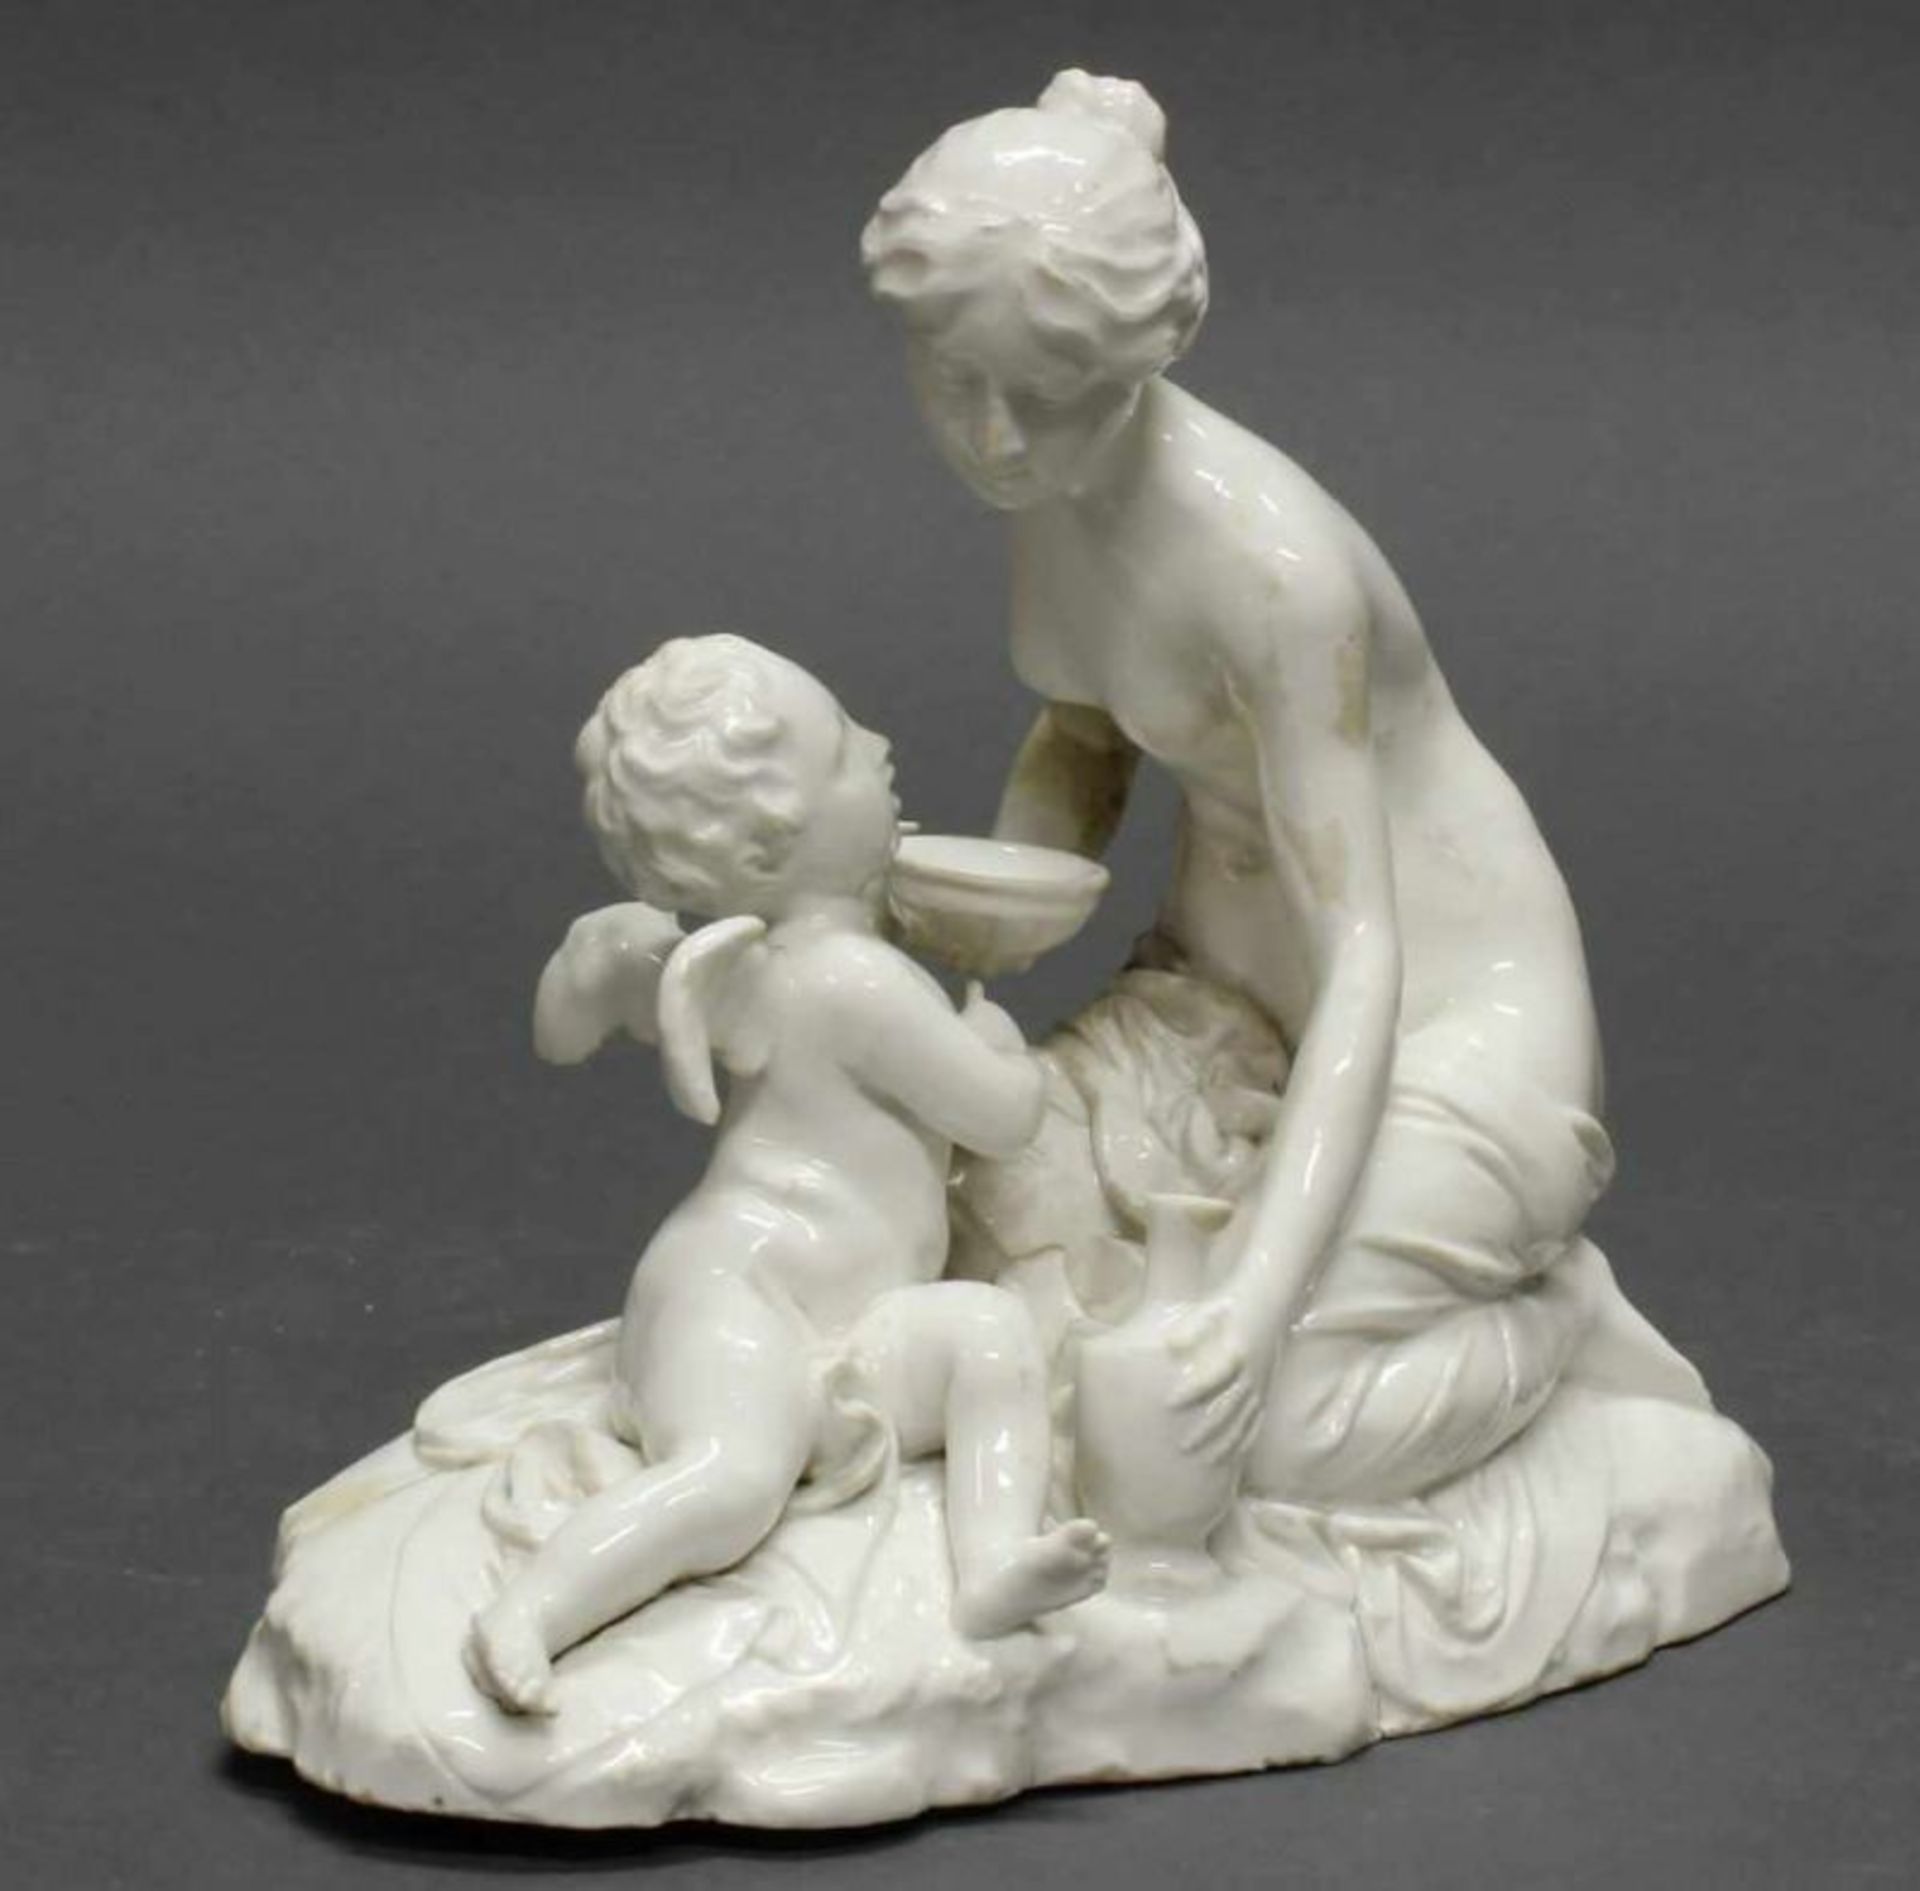 Porzellangruppe, "Hebe und Cupido", Höchst, um 1775-1796, Ritzmarken N 97 und ligiertes MH,